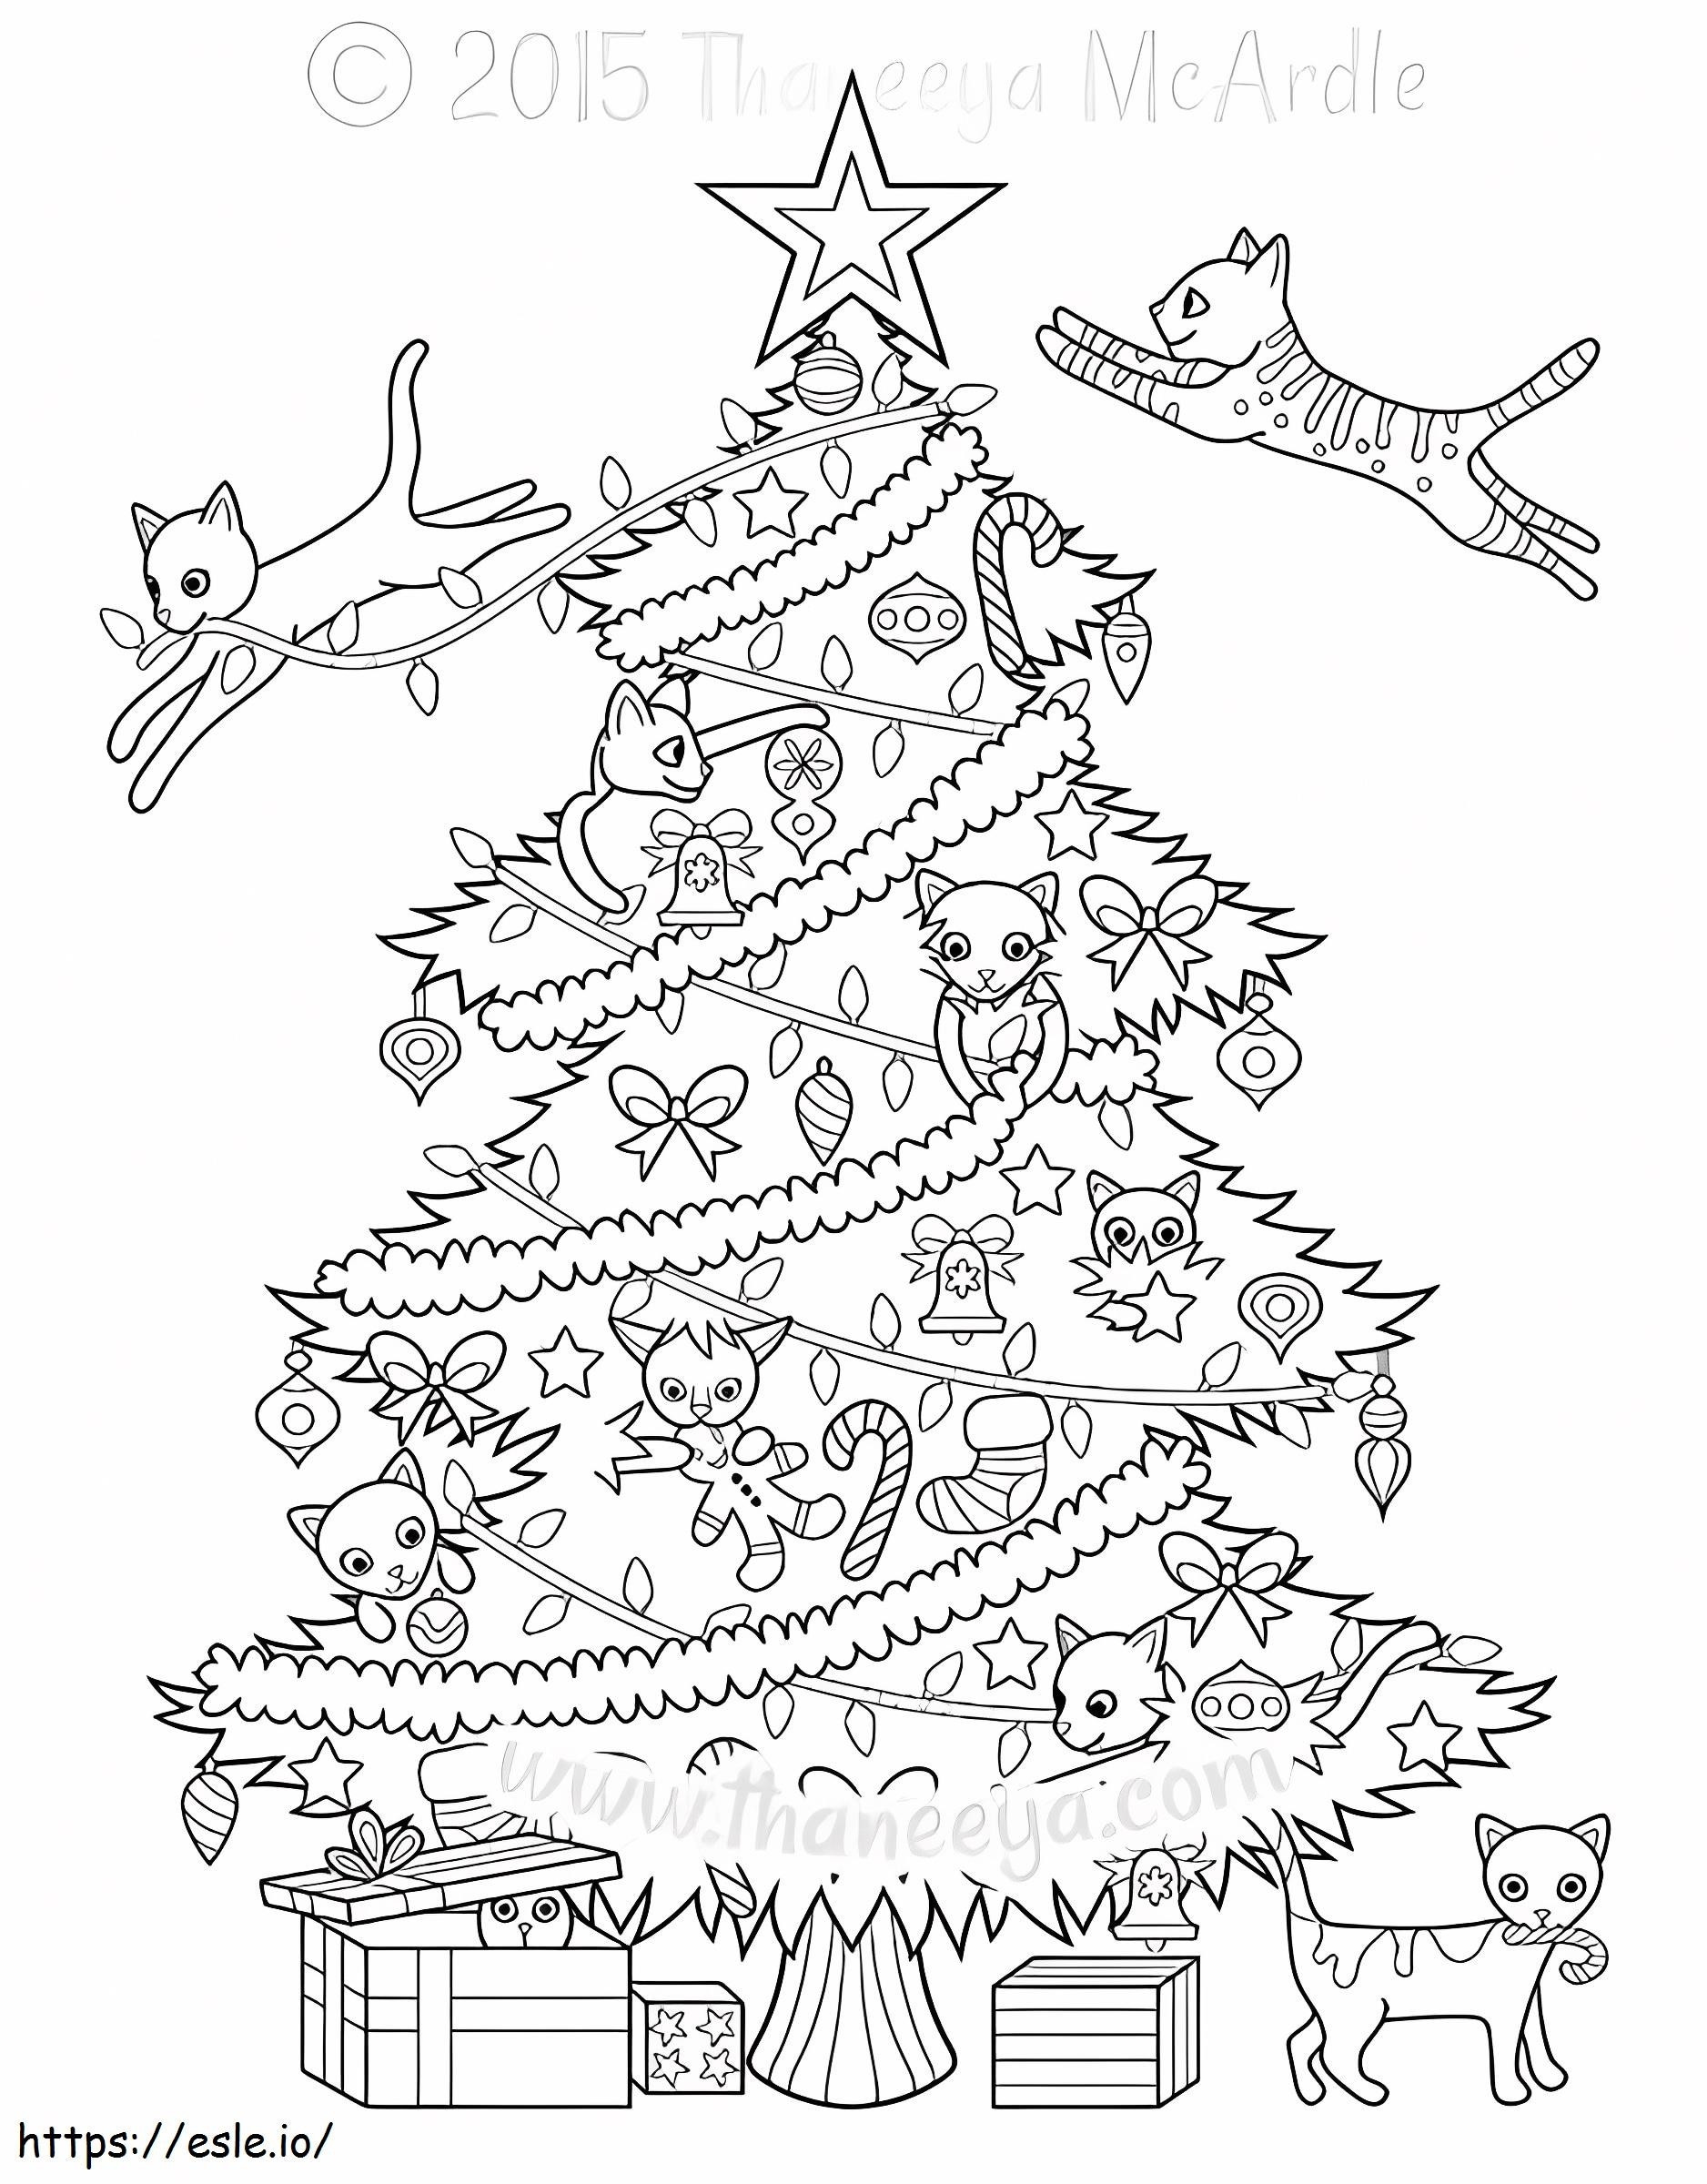 1541724239 Gatti dell'albero di Natale di Thaneeya Mcardle da colorare